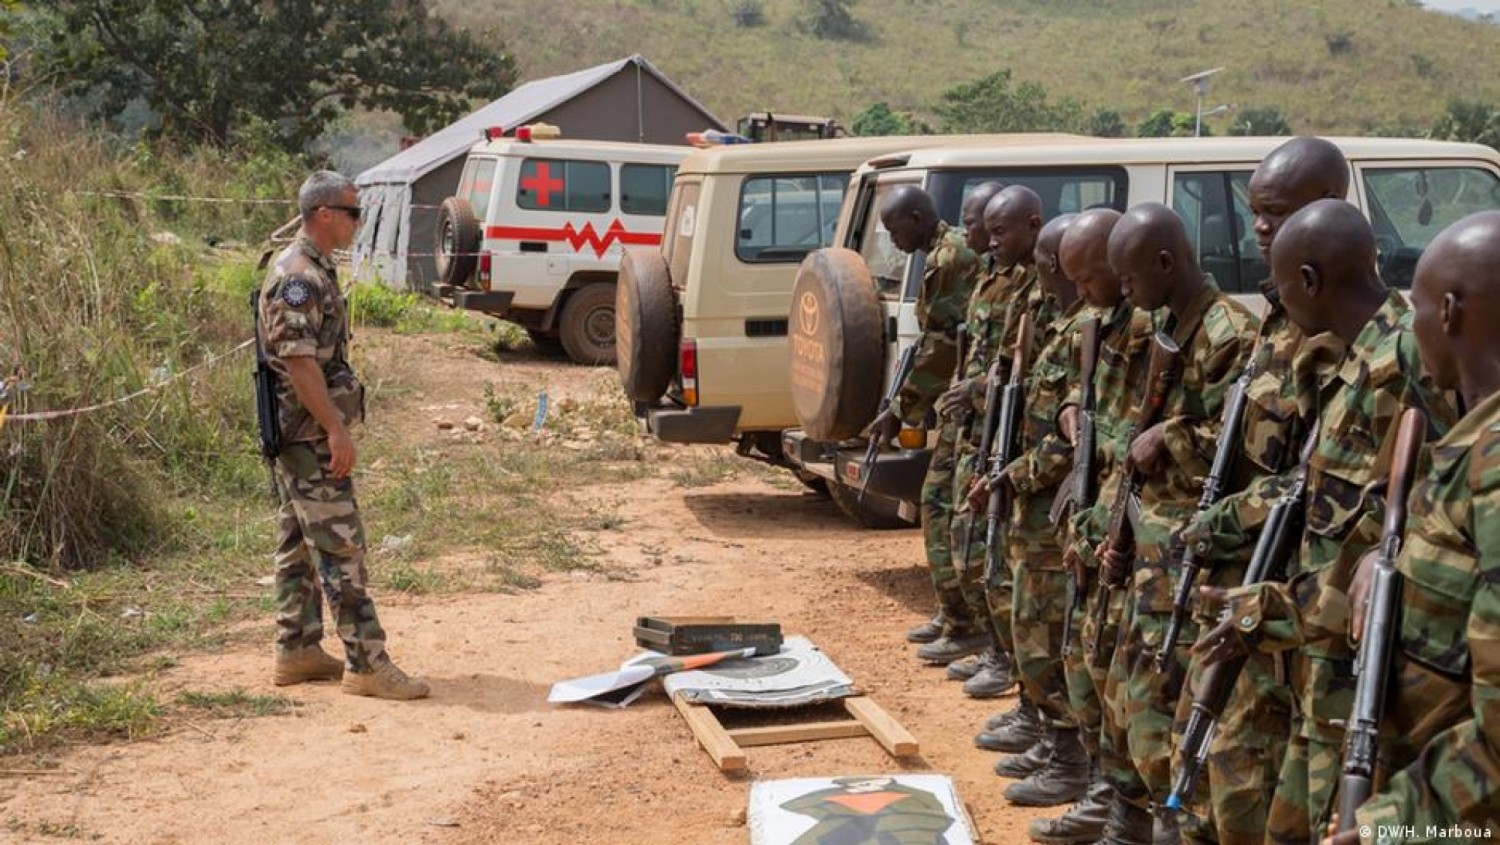 Centrafrique : Un bataillon formé par l'UE sous le commandement de Wagner, selon un nouveau rapport